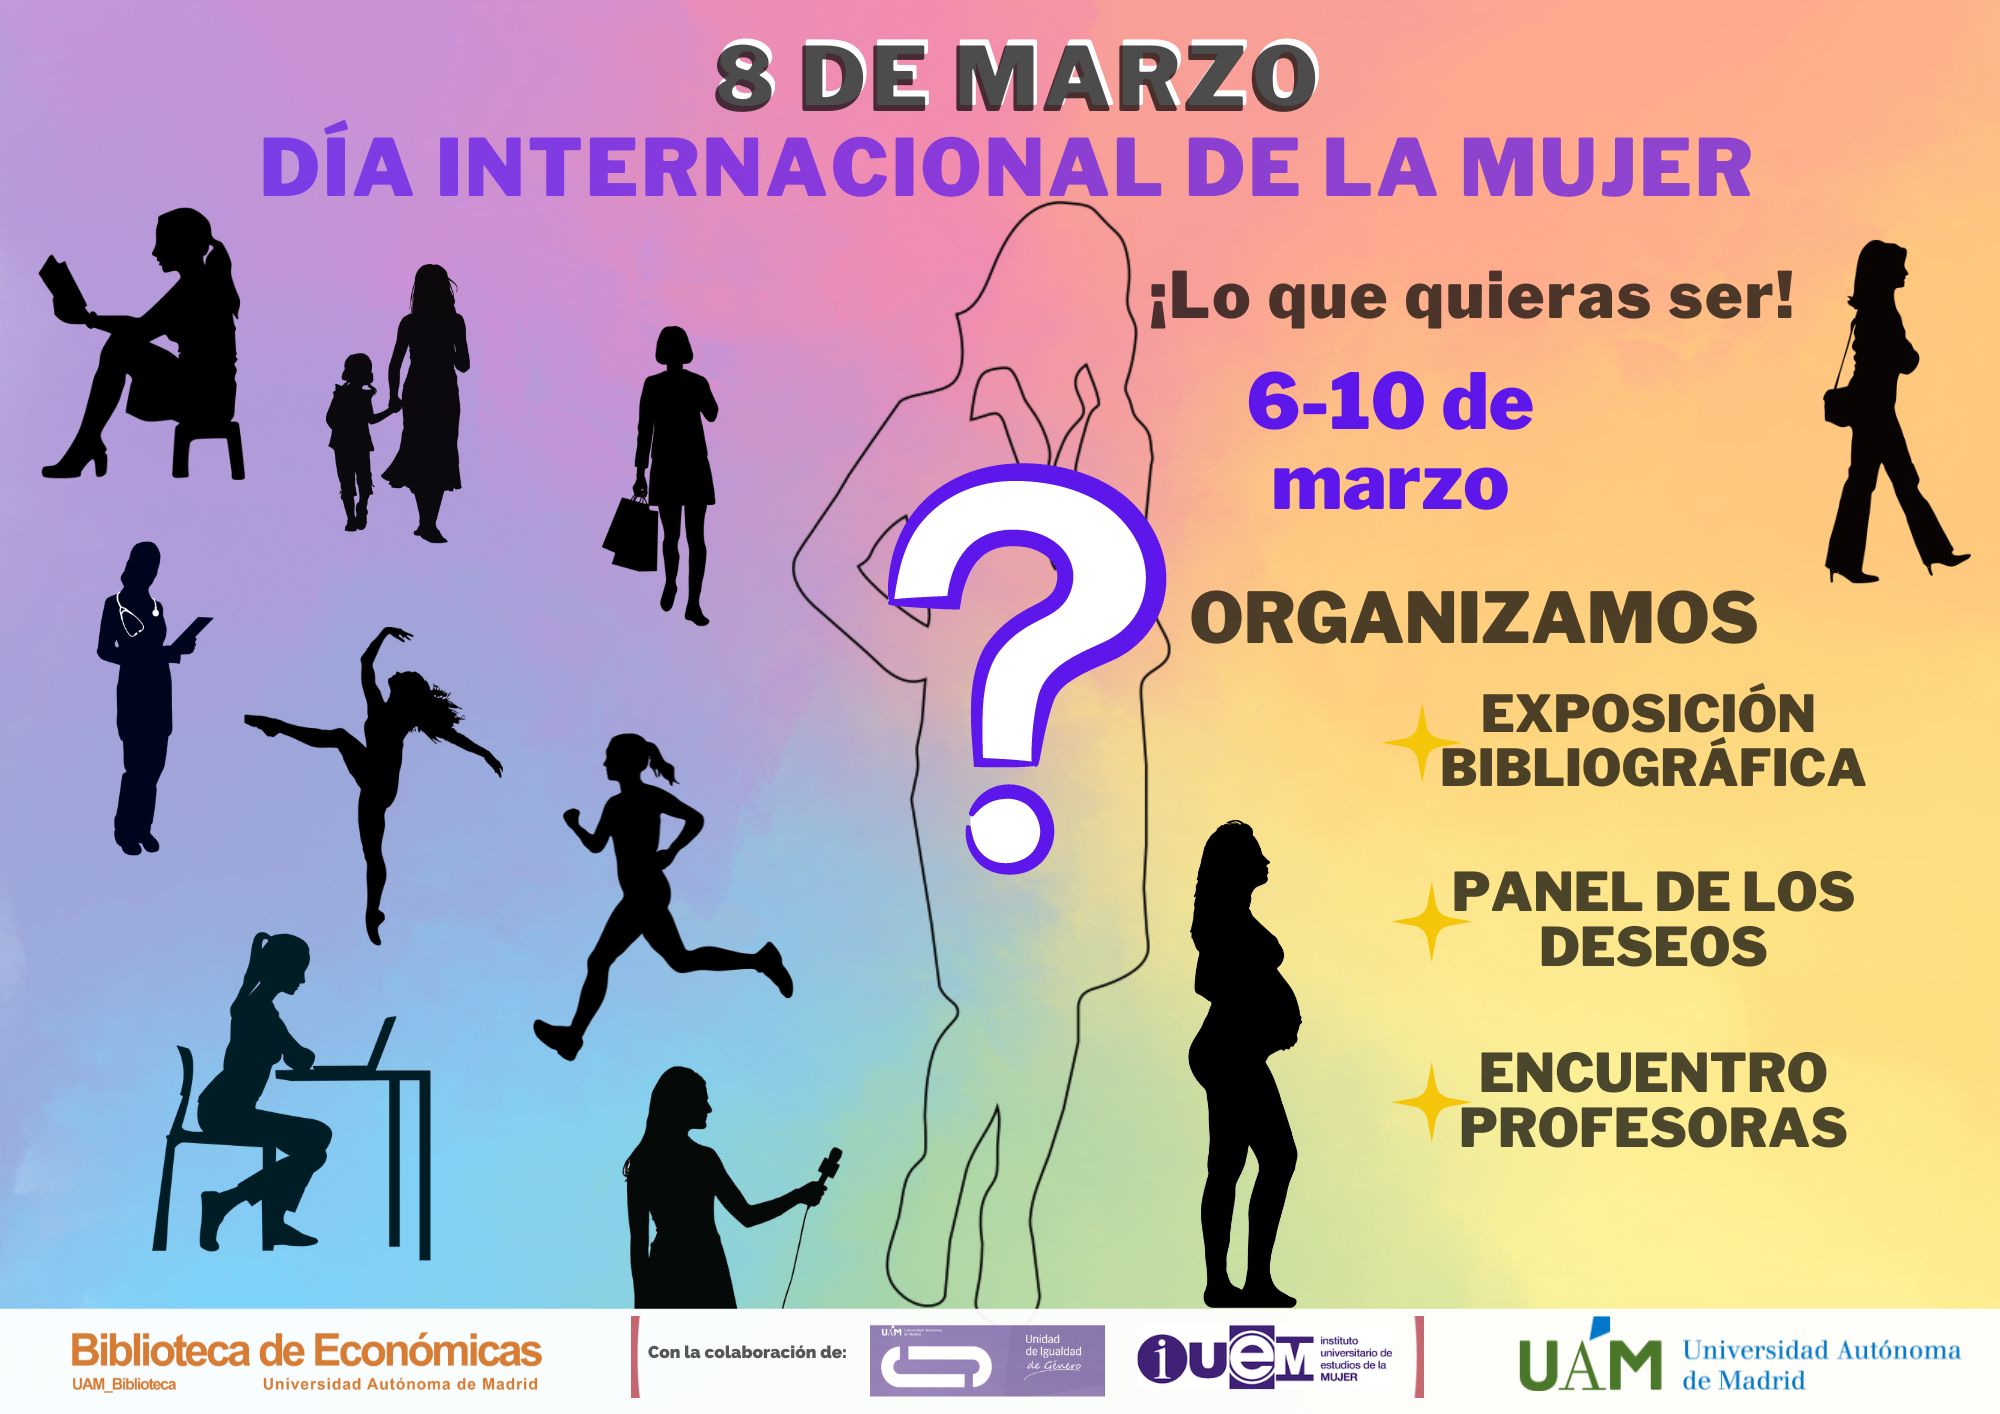 Cartel anunciando las actividades del Día Internacional de la Mujer en la Biblioteca de Económicas UAM